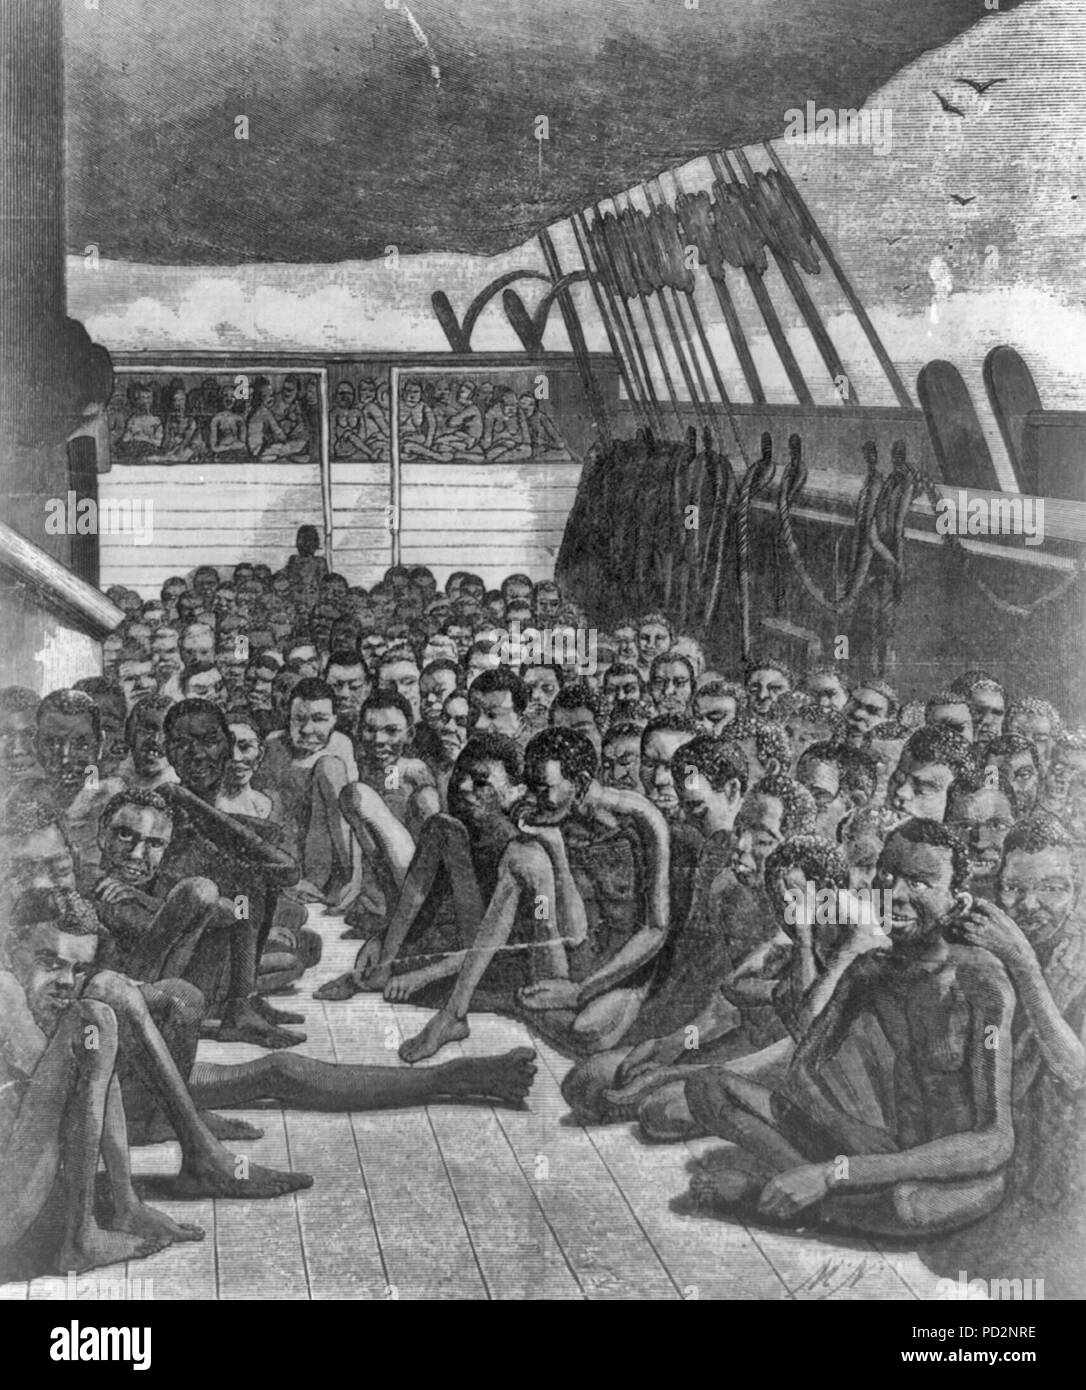 Gli africani della corteccia slave 'Wildfire'--Il ponte slave della corteccia "fuochi", portato a Key West on April 30, 1860 - uomini africani affollata su un ponte inferiore; donne africane affollata su un pianale superiore. Foto Stock